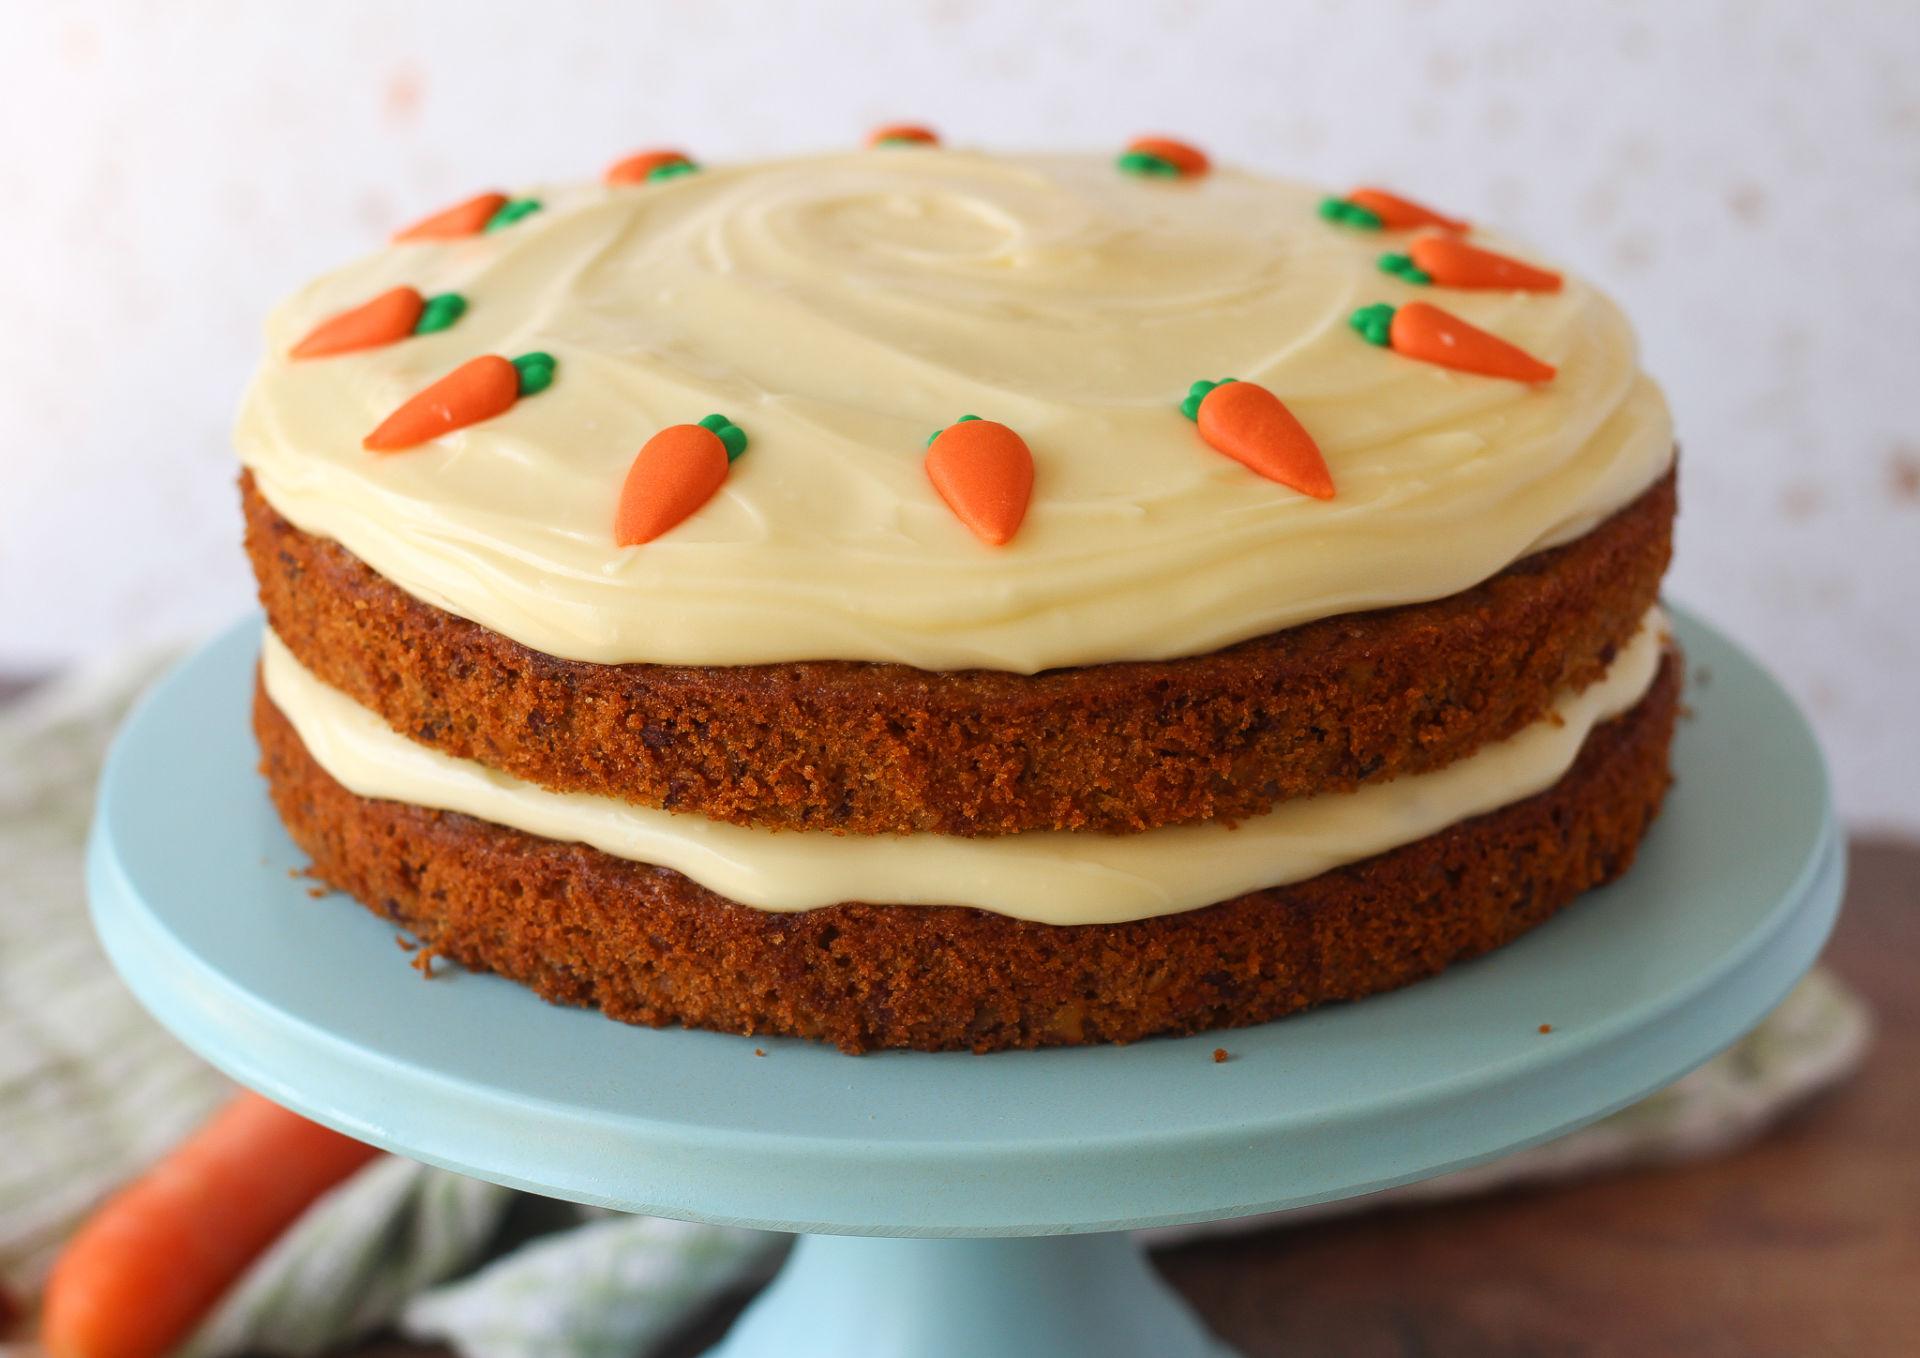 Simple Carrot Cake - Baker Jo